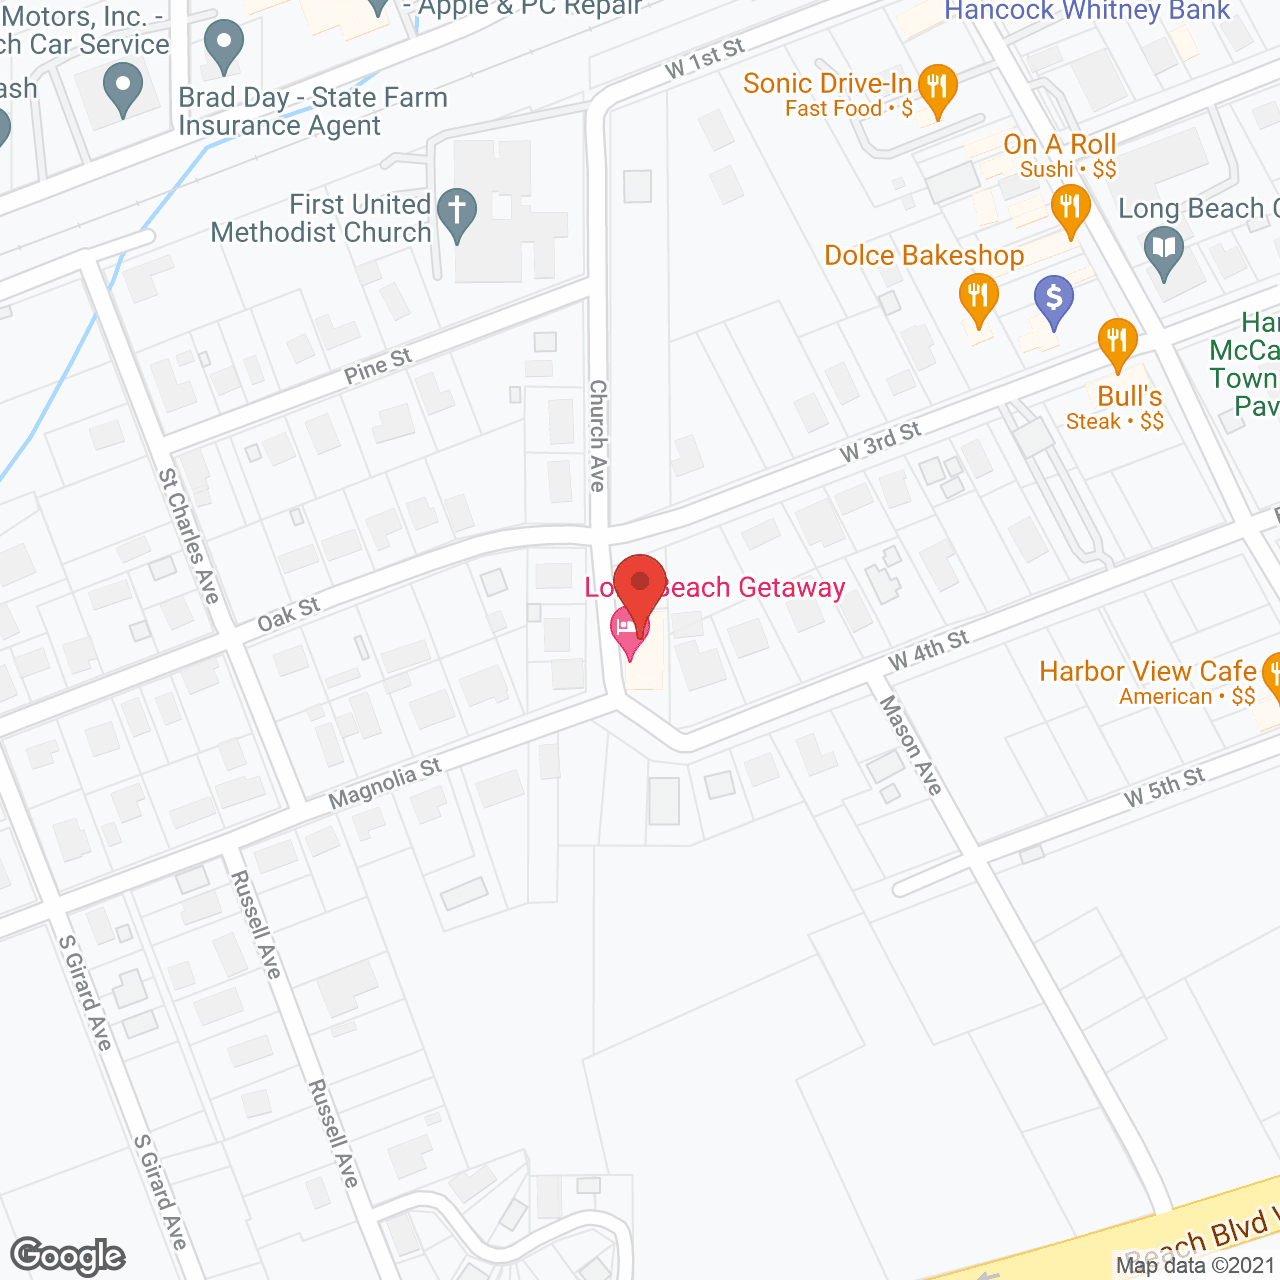 Dorcester West in google map